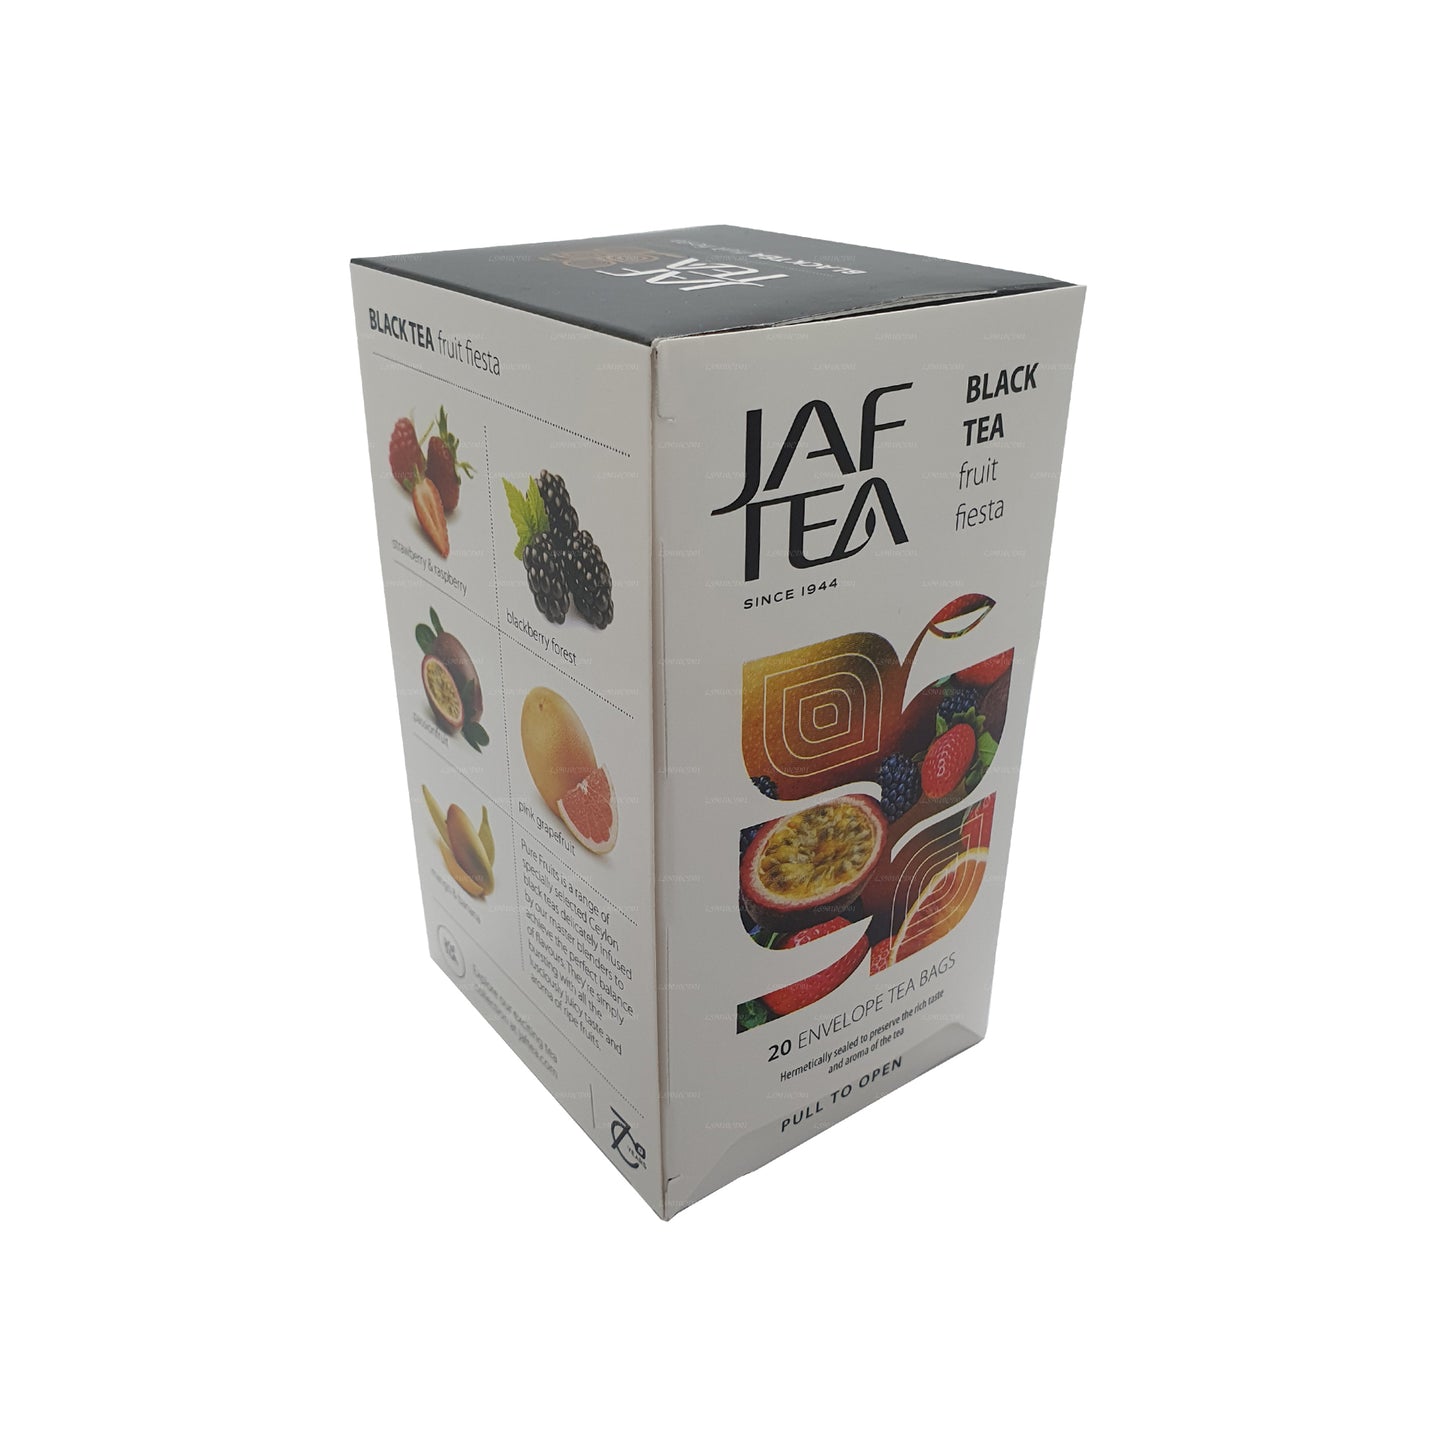 Jaf Tea Pure Fruits Collection Thé noir Fruit Fiesta (30g) 20 sachets de thé